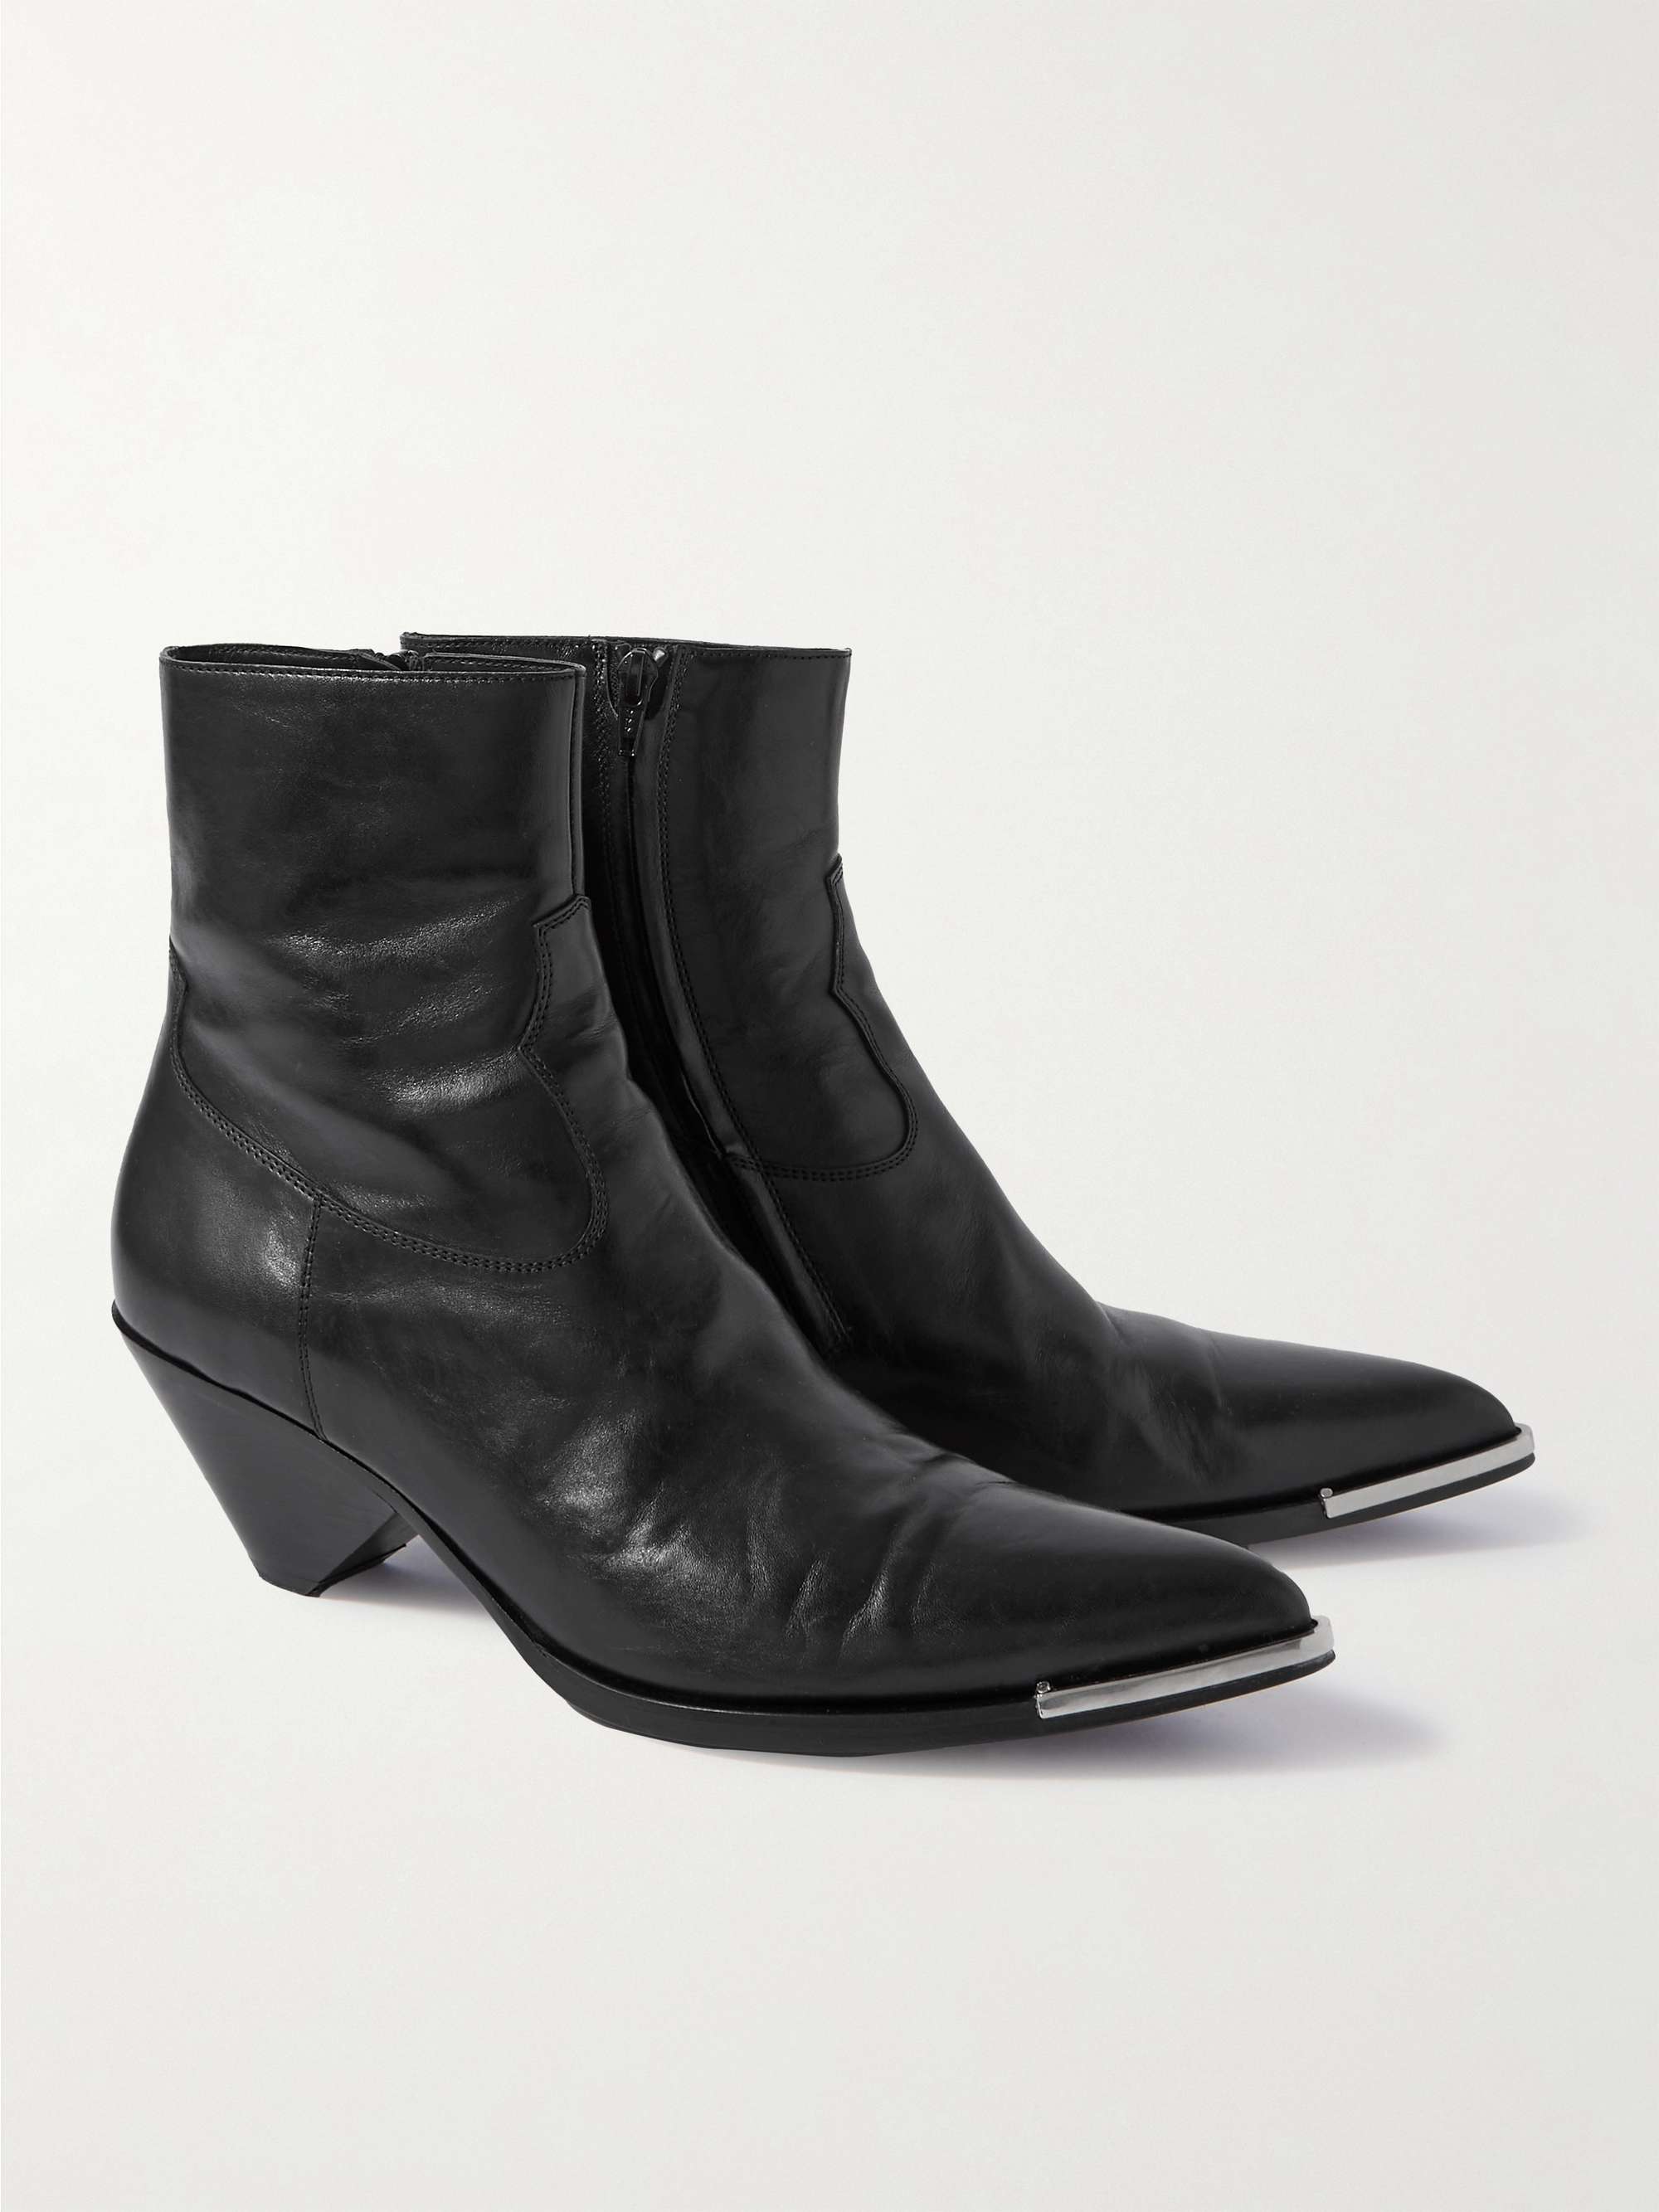 Black Leather Western Boots | CELINE HOMME | MR PORTER